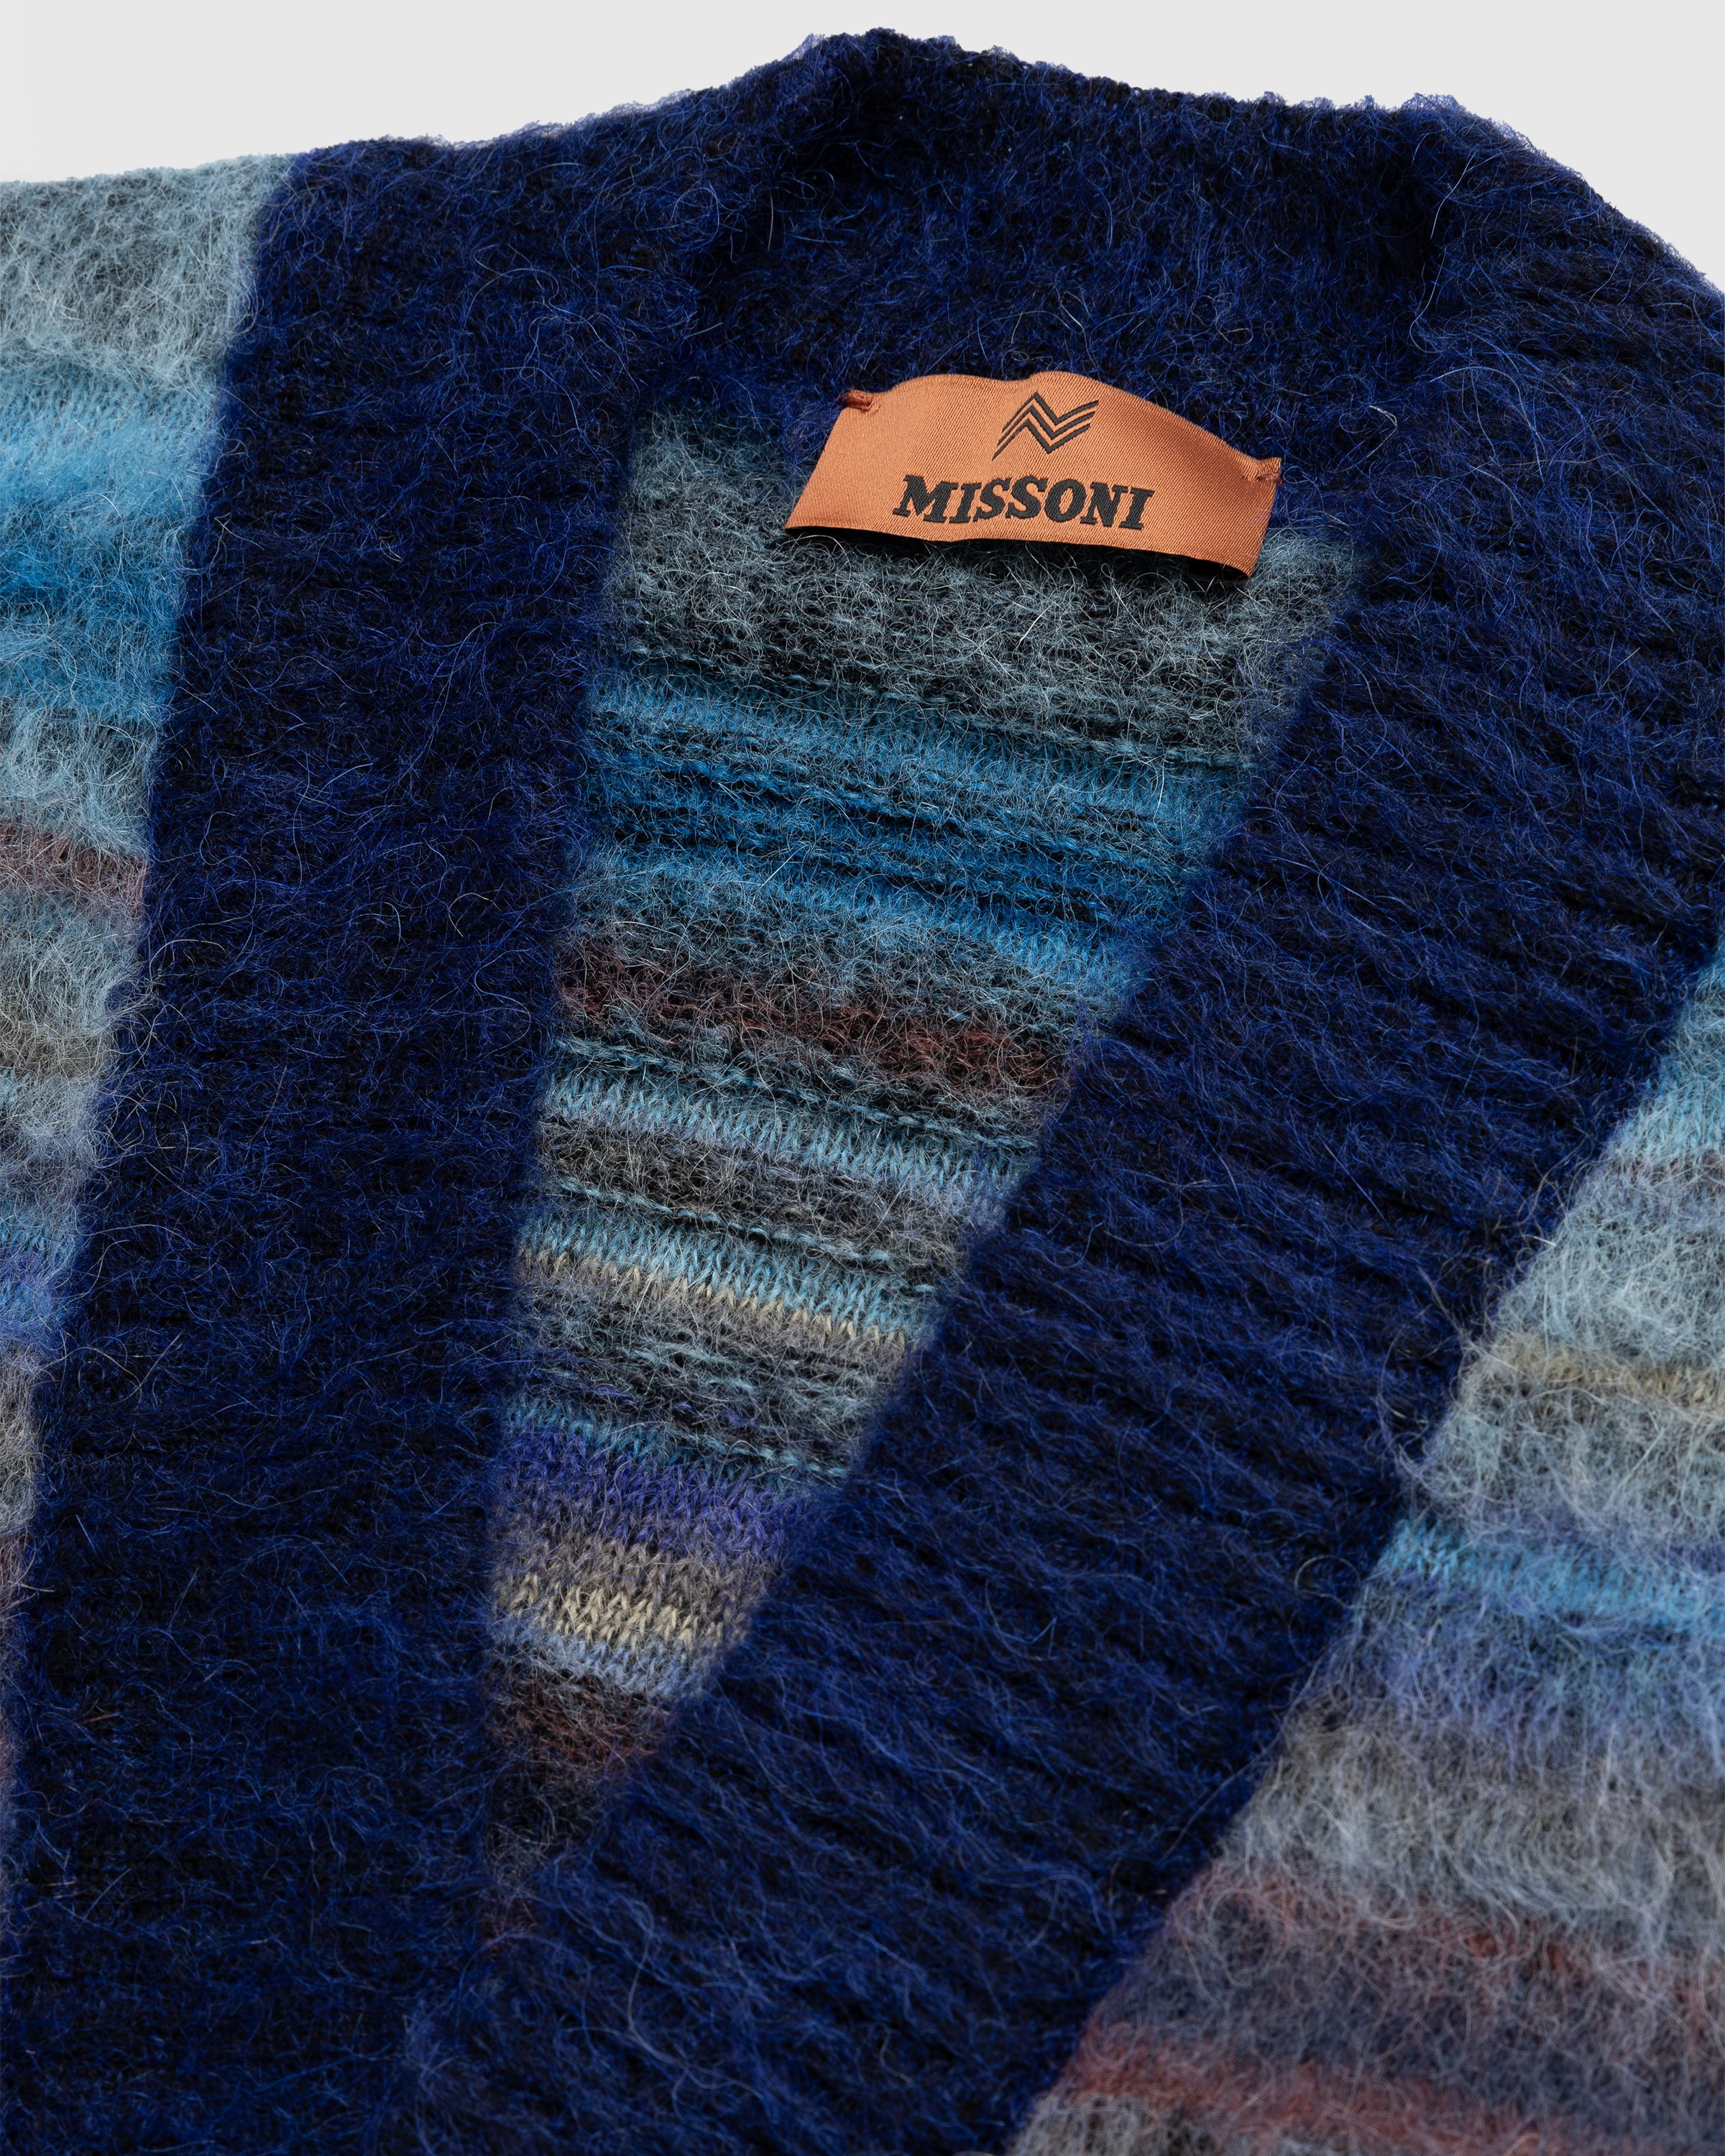 Missoni - Wool Cardigan Multi - Clothing - Multi - Image 5